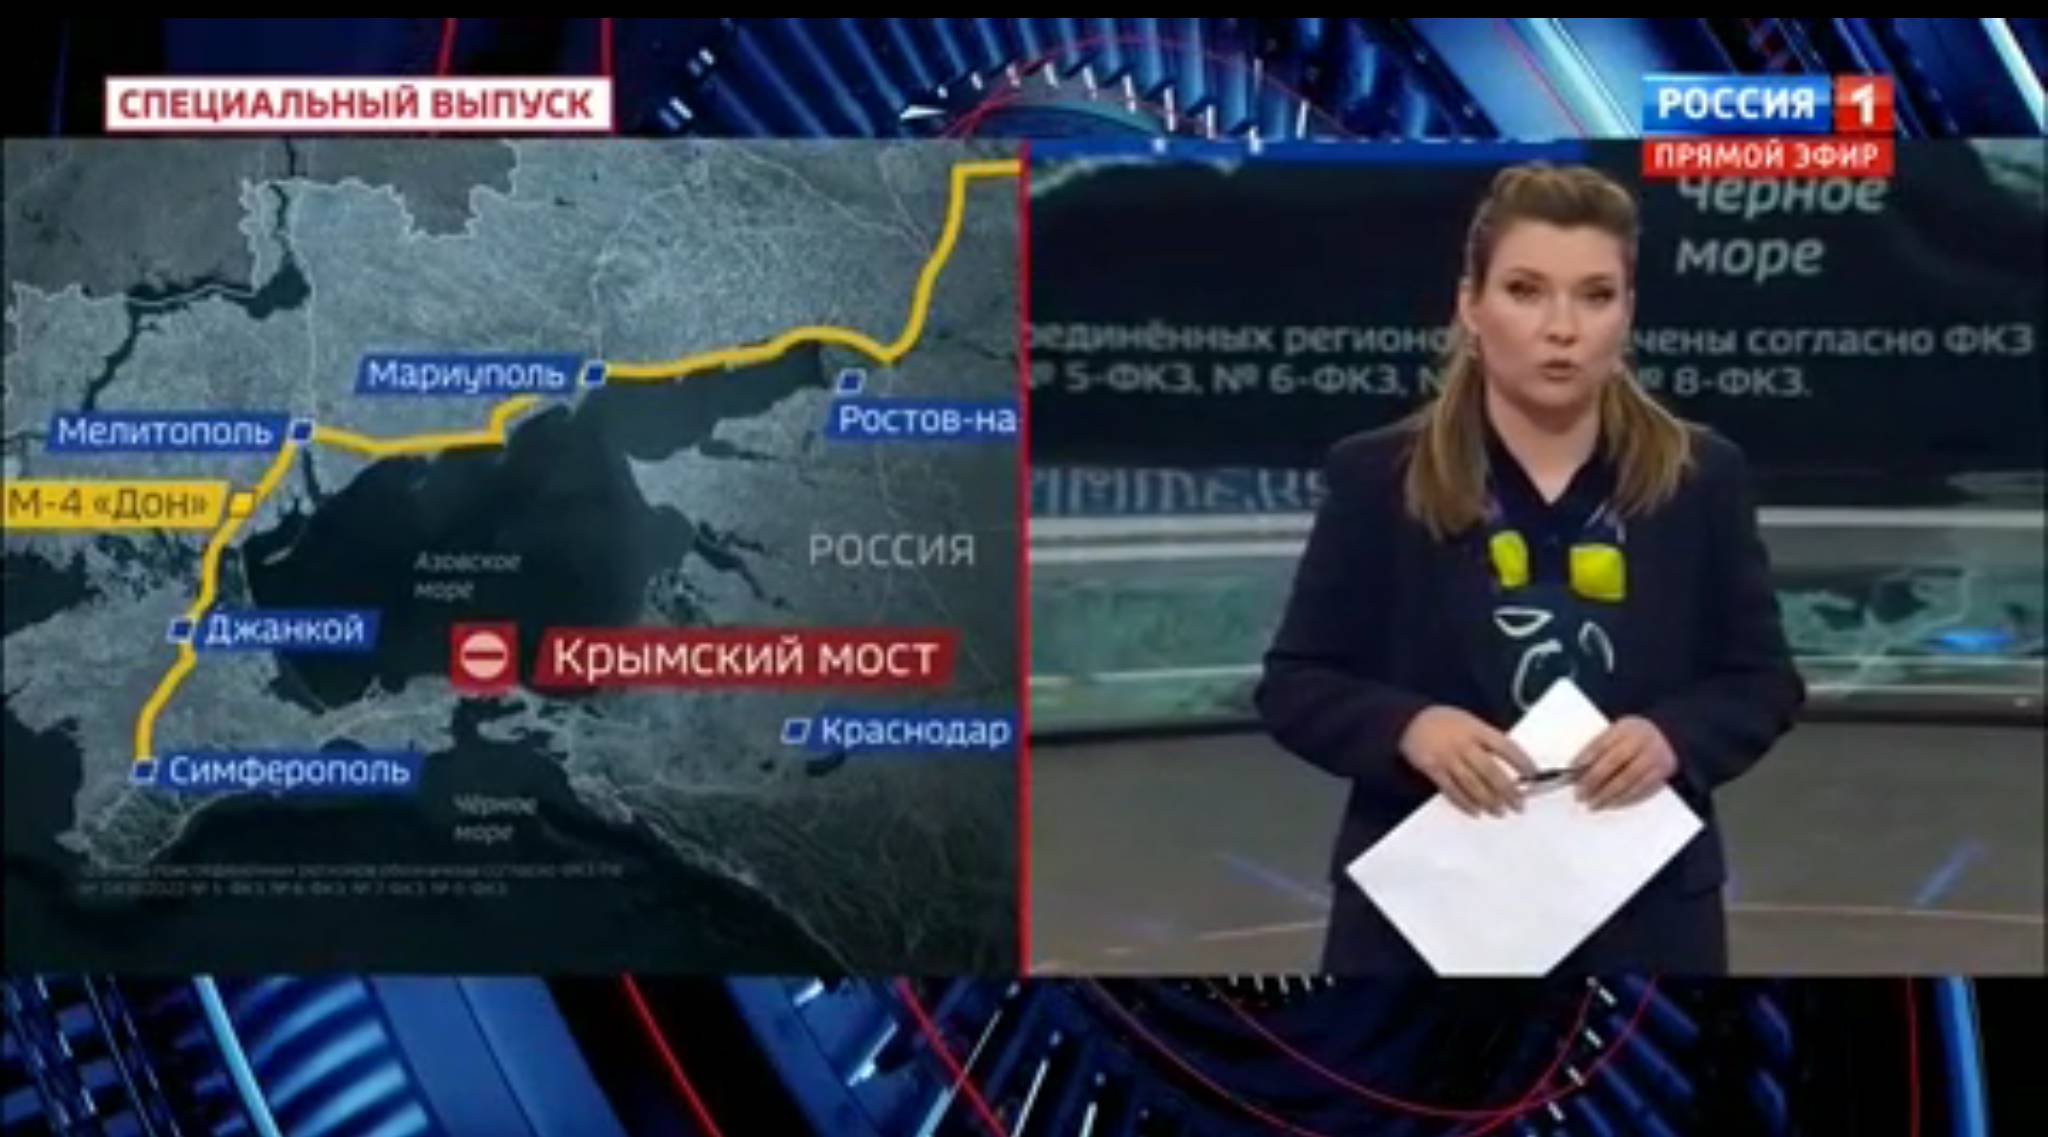 Kobieta w studiu telewizyjnym stoi przed mapą pokazuącą objazd z Krymu do Rosji z pominięciem mostu krymiskiego (dookoła Morza Azowskiego)